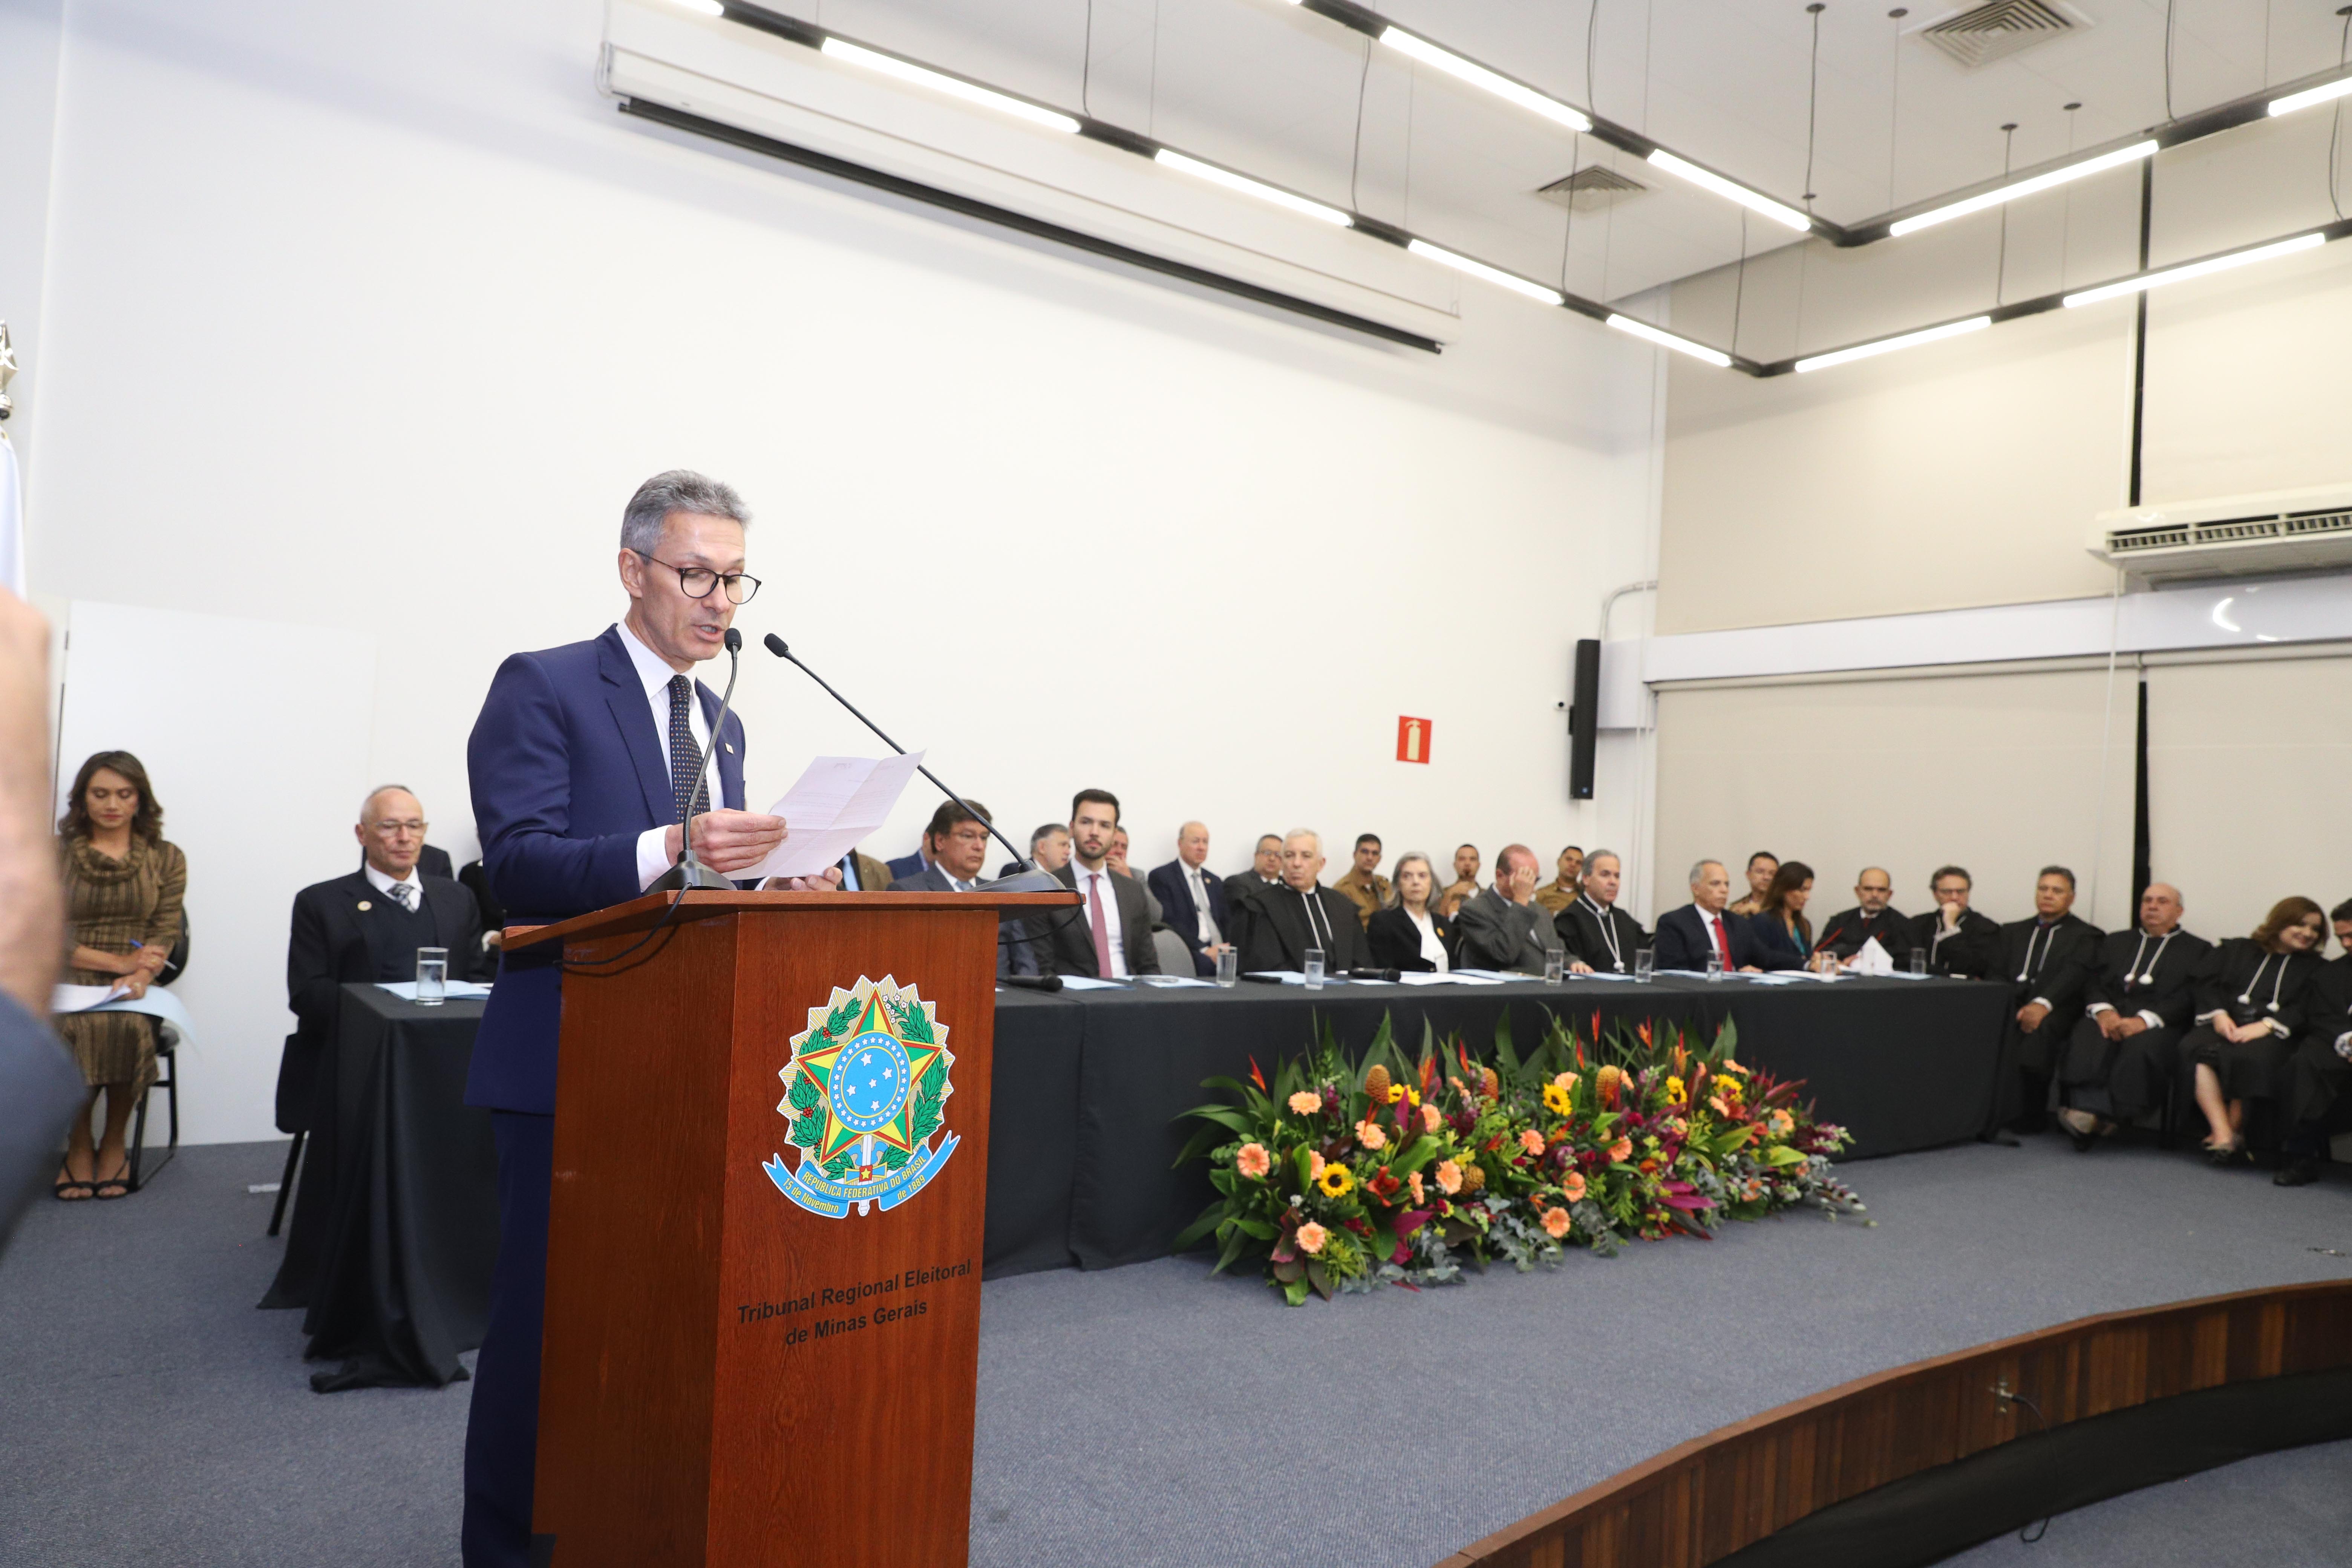 Agência Minas Gerais Governador Participa Da Posse Da Nova Presidência Do Tribunal Regional 